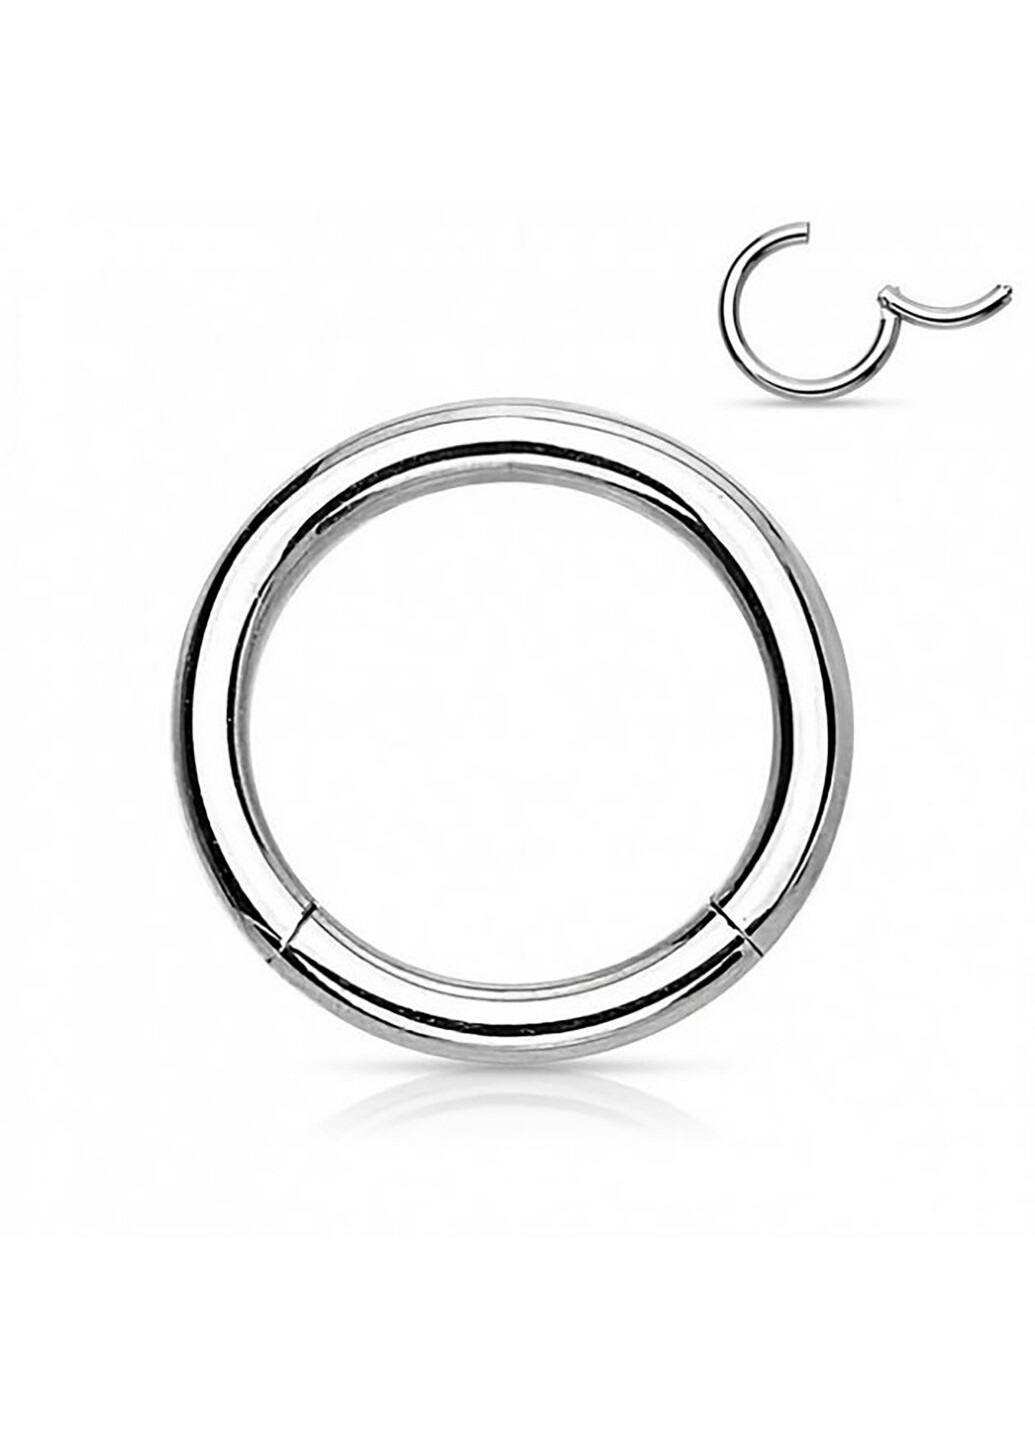 Универсальное кольцо - кликер из стали бренда PiercedFish диаметром 14 мм, толщиной 1,2 мм Spikes (257898151)